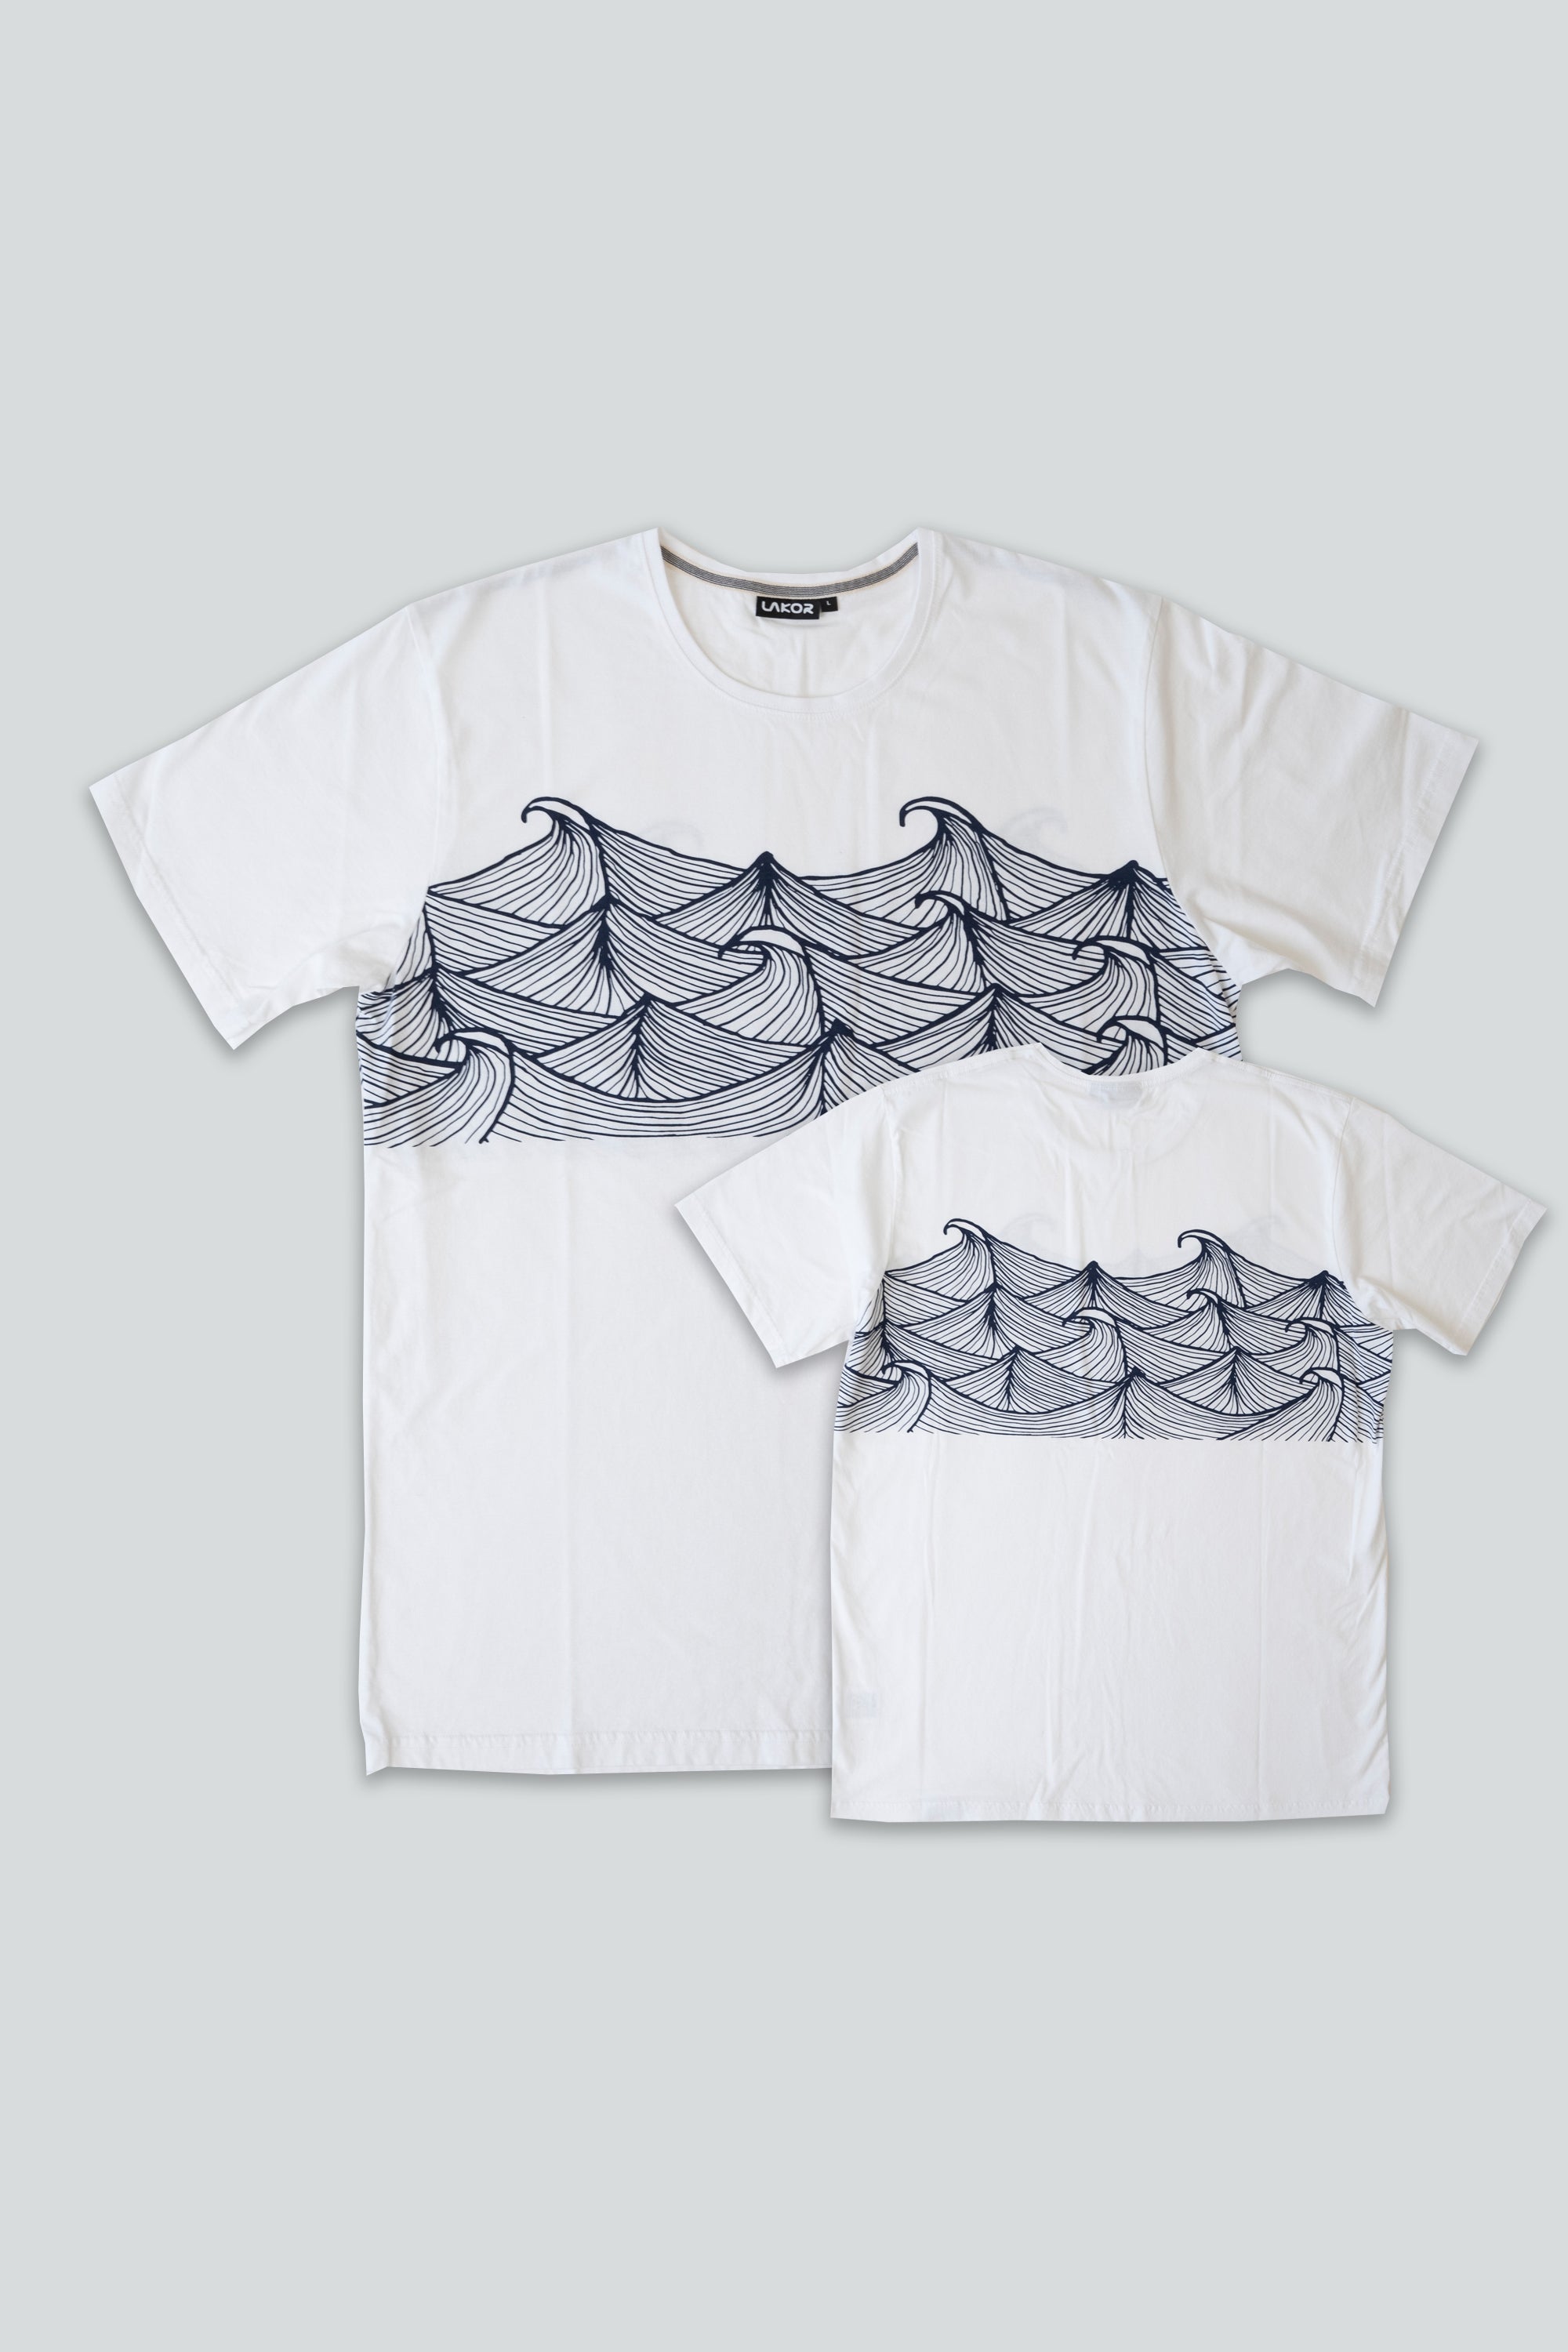 High Sea T-shirt (White)